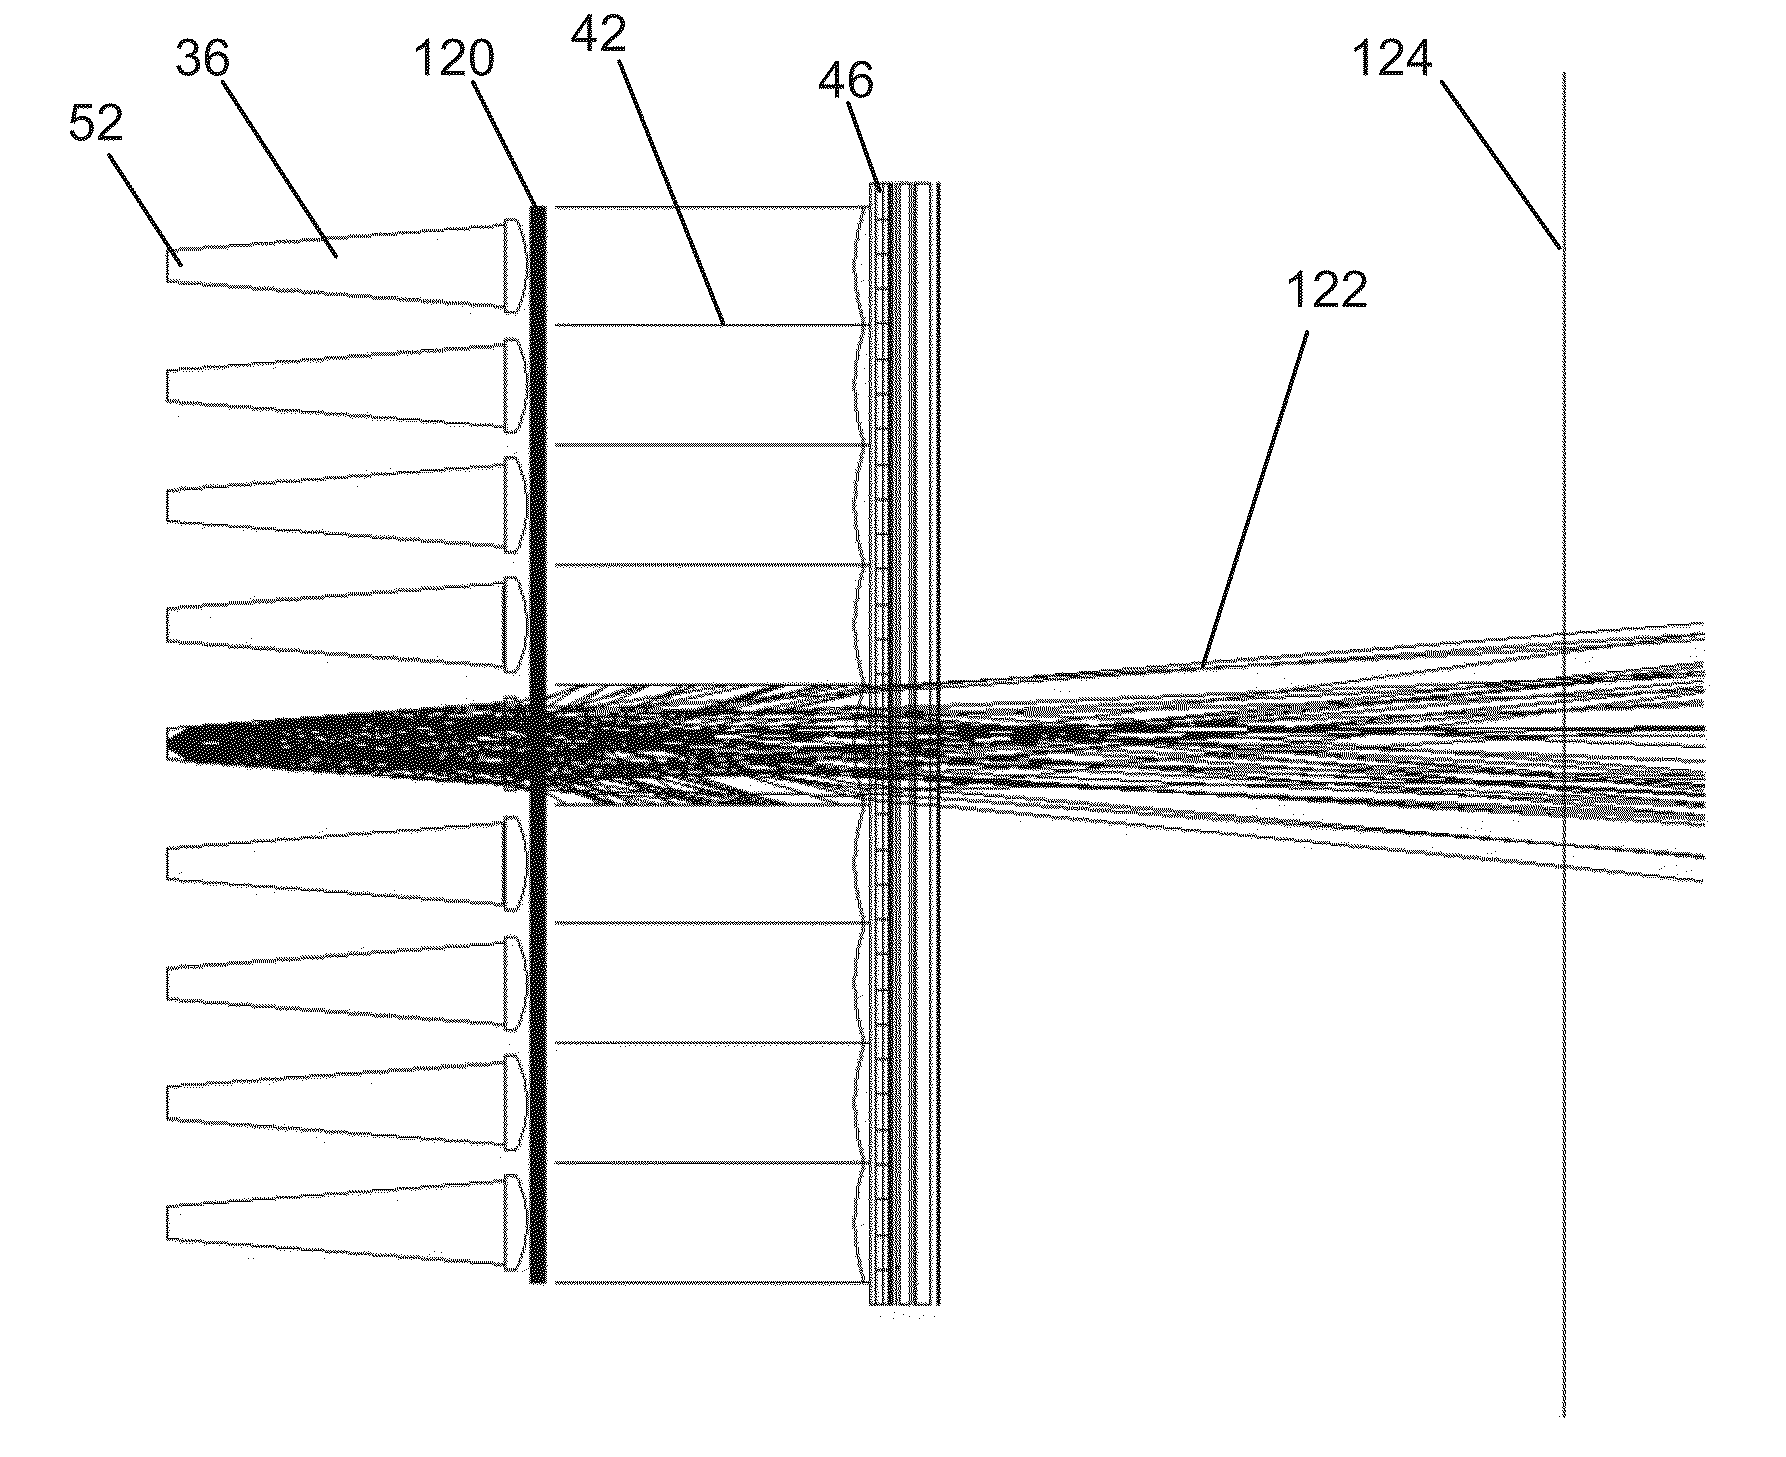 Light emitting diode linear light with uniform far field